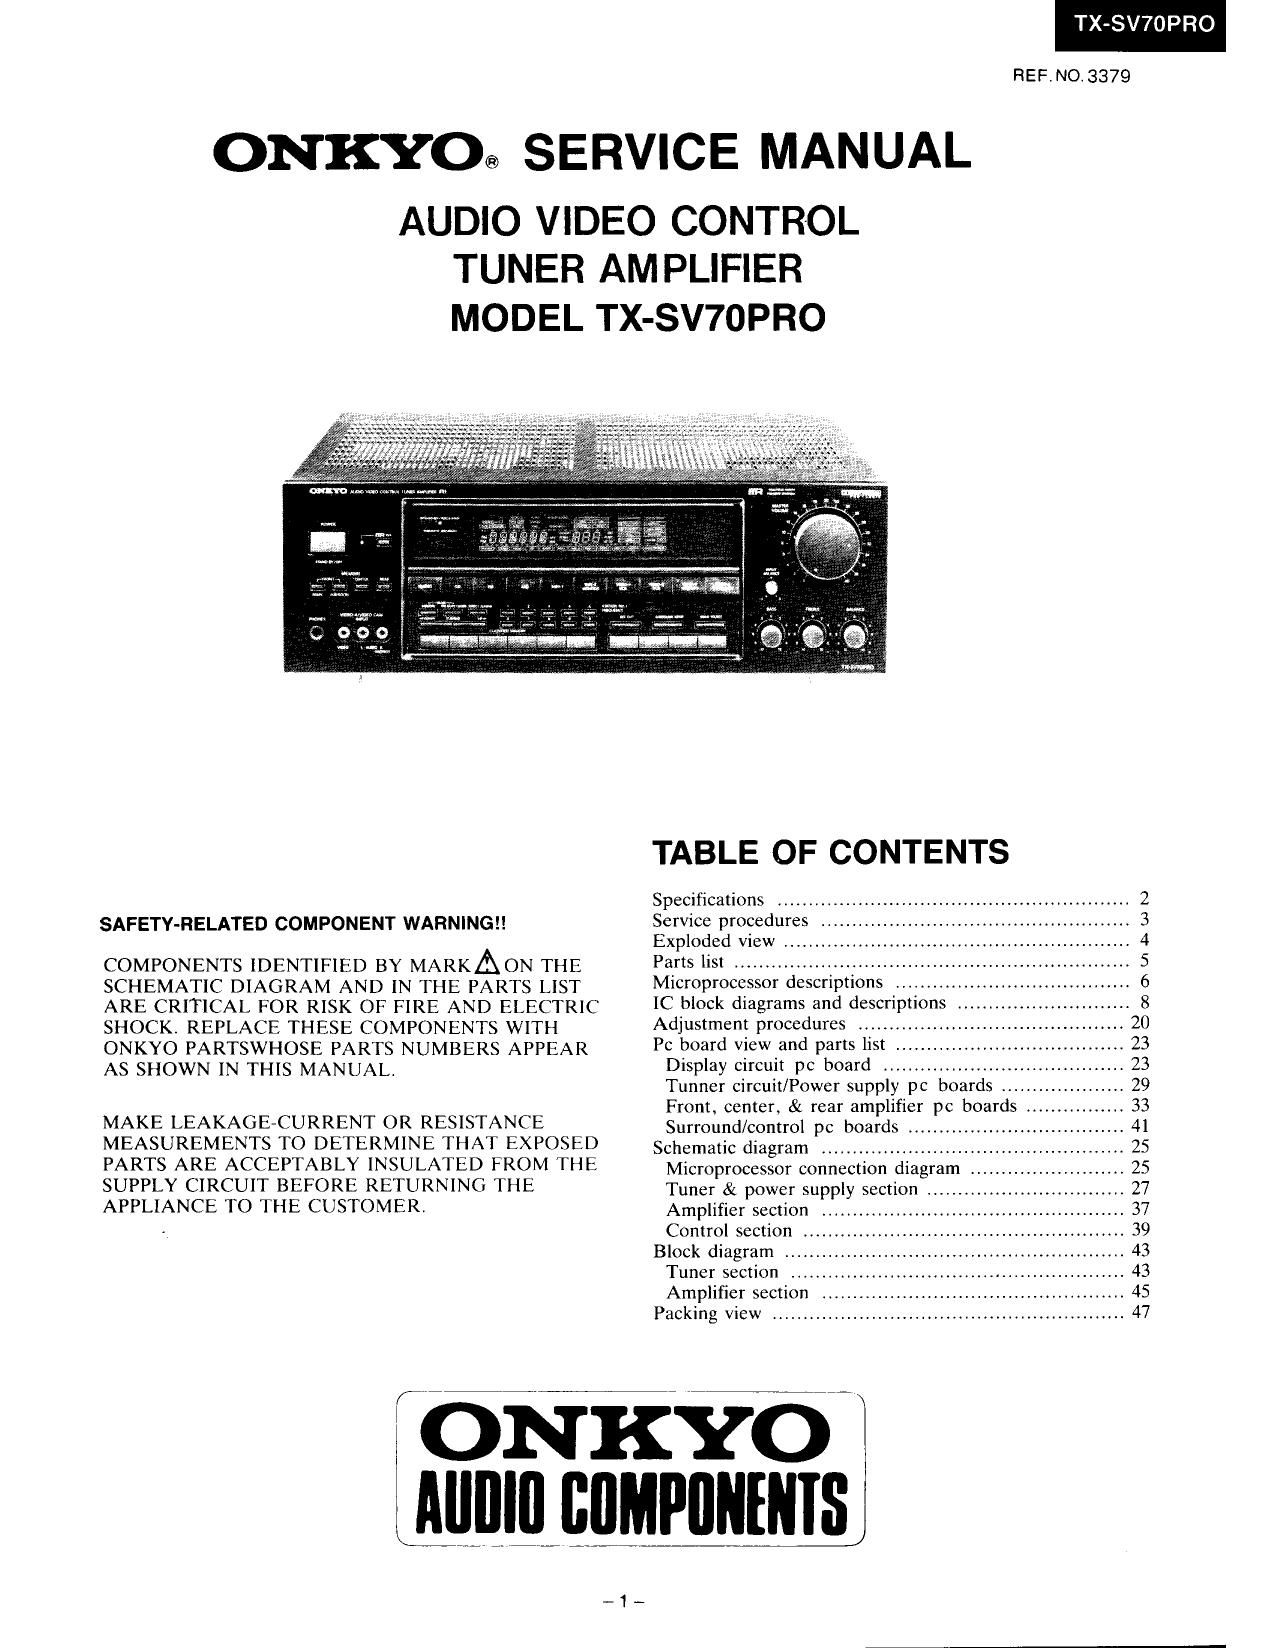 Onkyo TXSV 70 PRO Service Manual